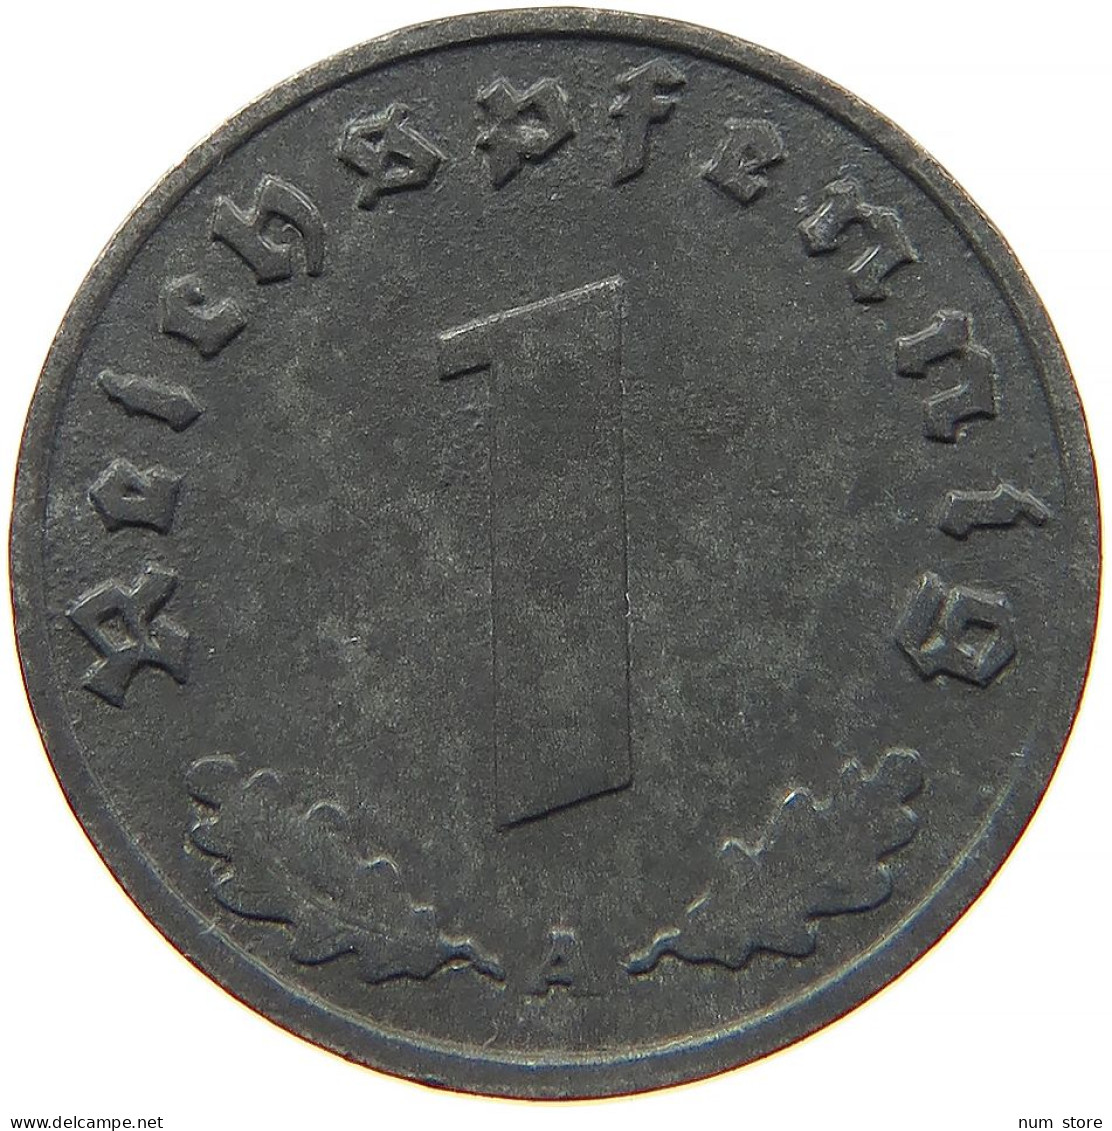 GERMANY 1 REICHSPFENNIG 1940 A #s091 1043 - 1 Reichspfennig